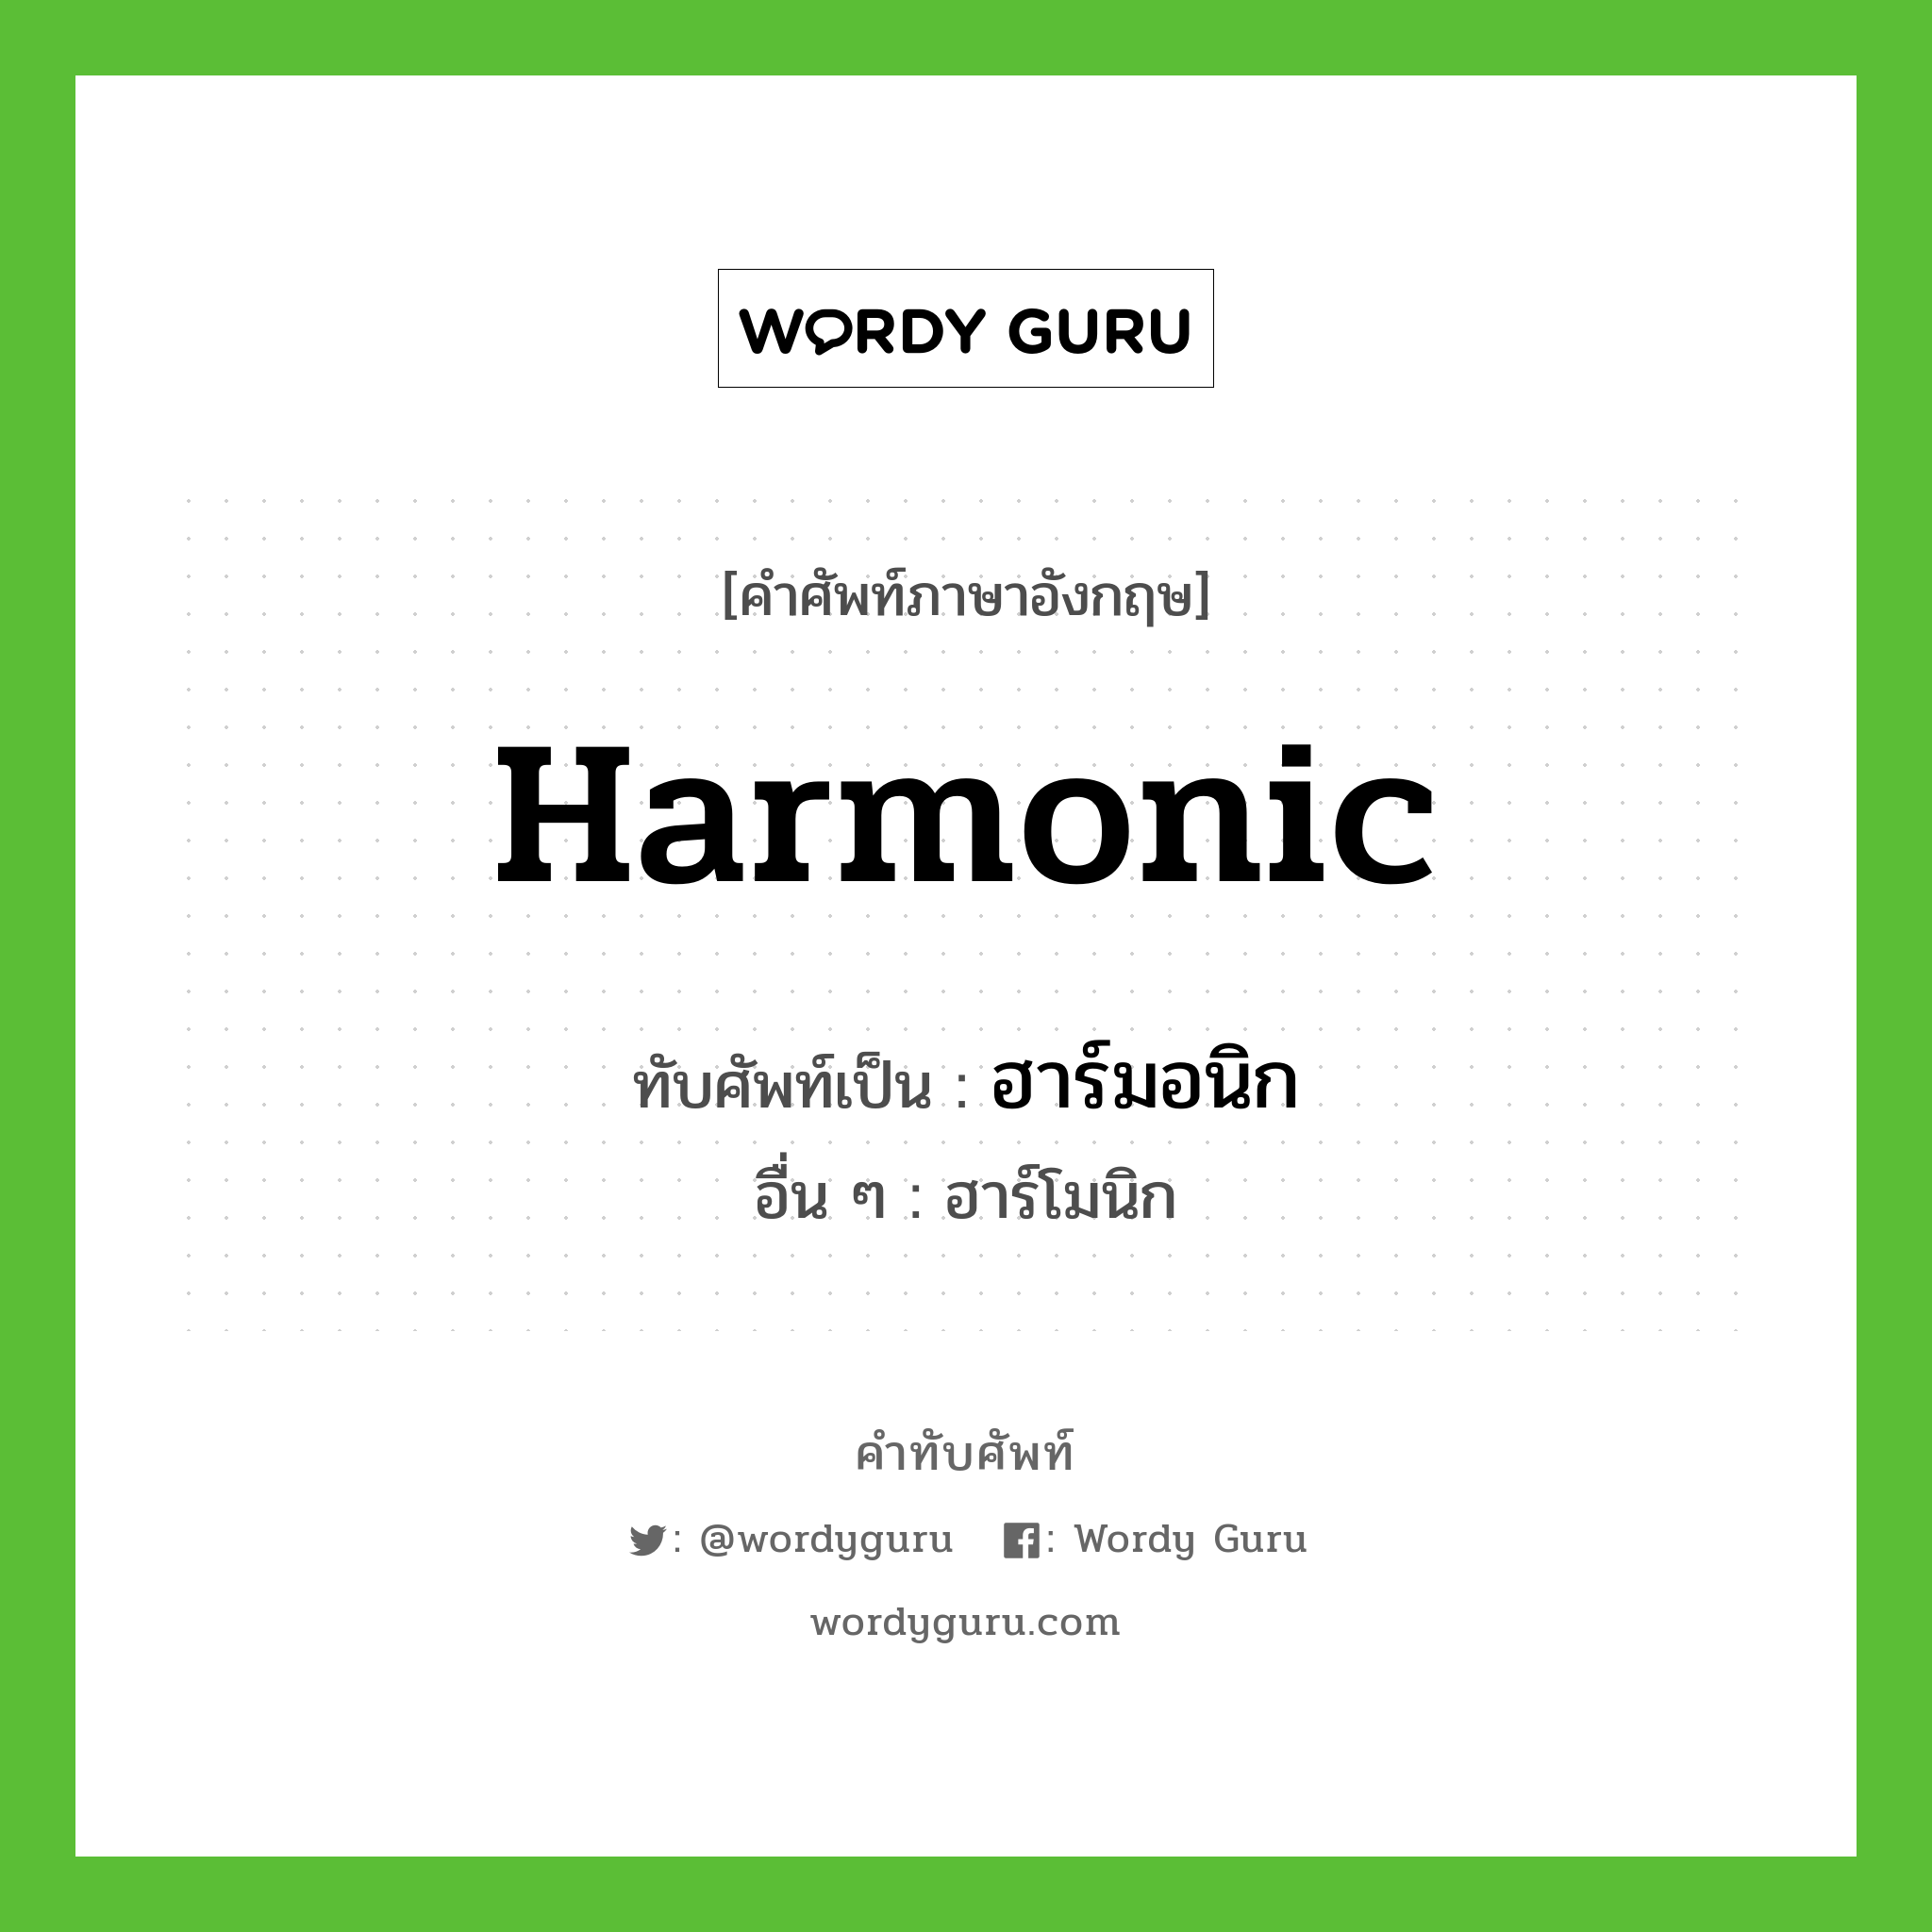 harmonic เขียนเป็นคำไทยว่าอะไร?, คำศัพท์ภาษาอังกฤษ harmonic ทับศัพท์เป็น ฮาร์มอนิก อื่น ๆ ฮาร์โมนิก